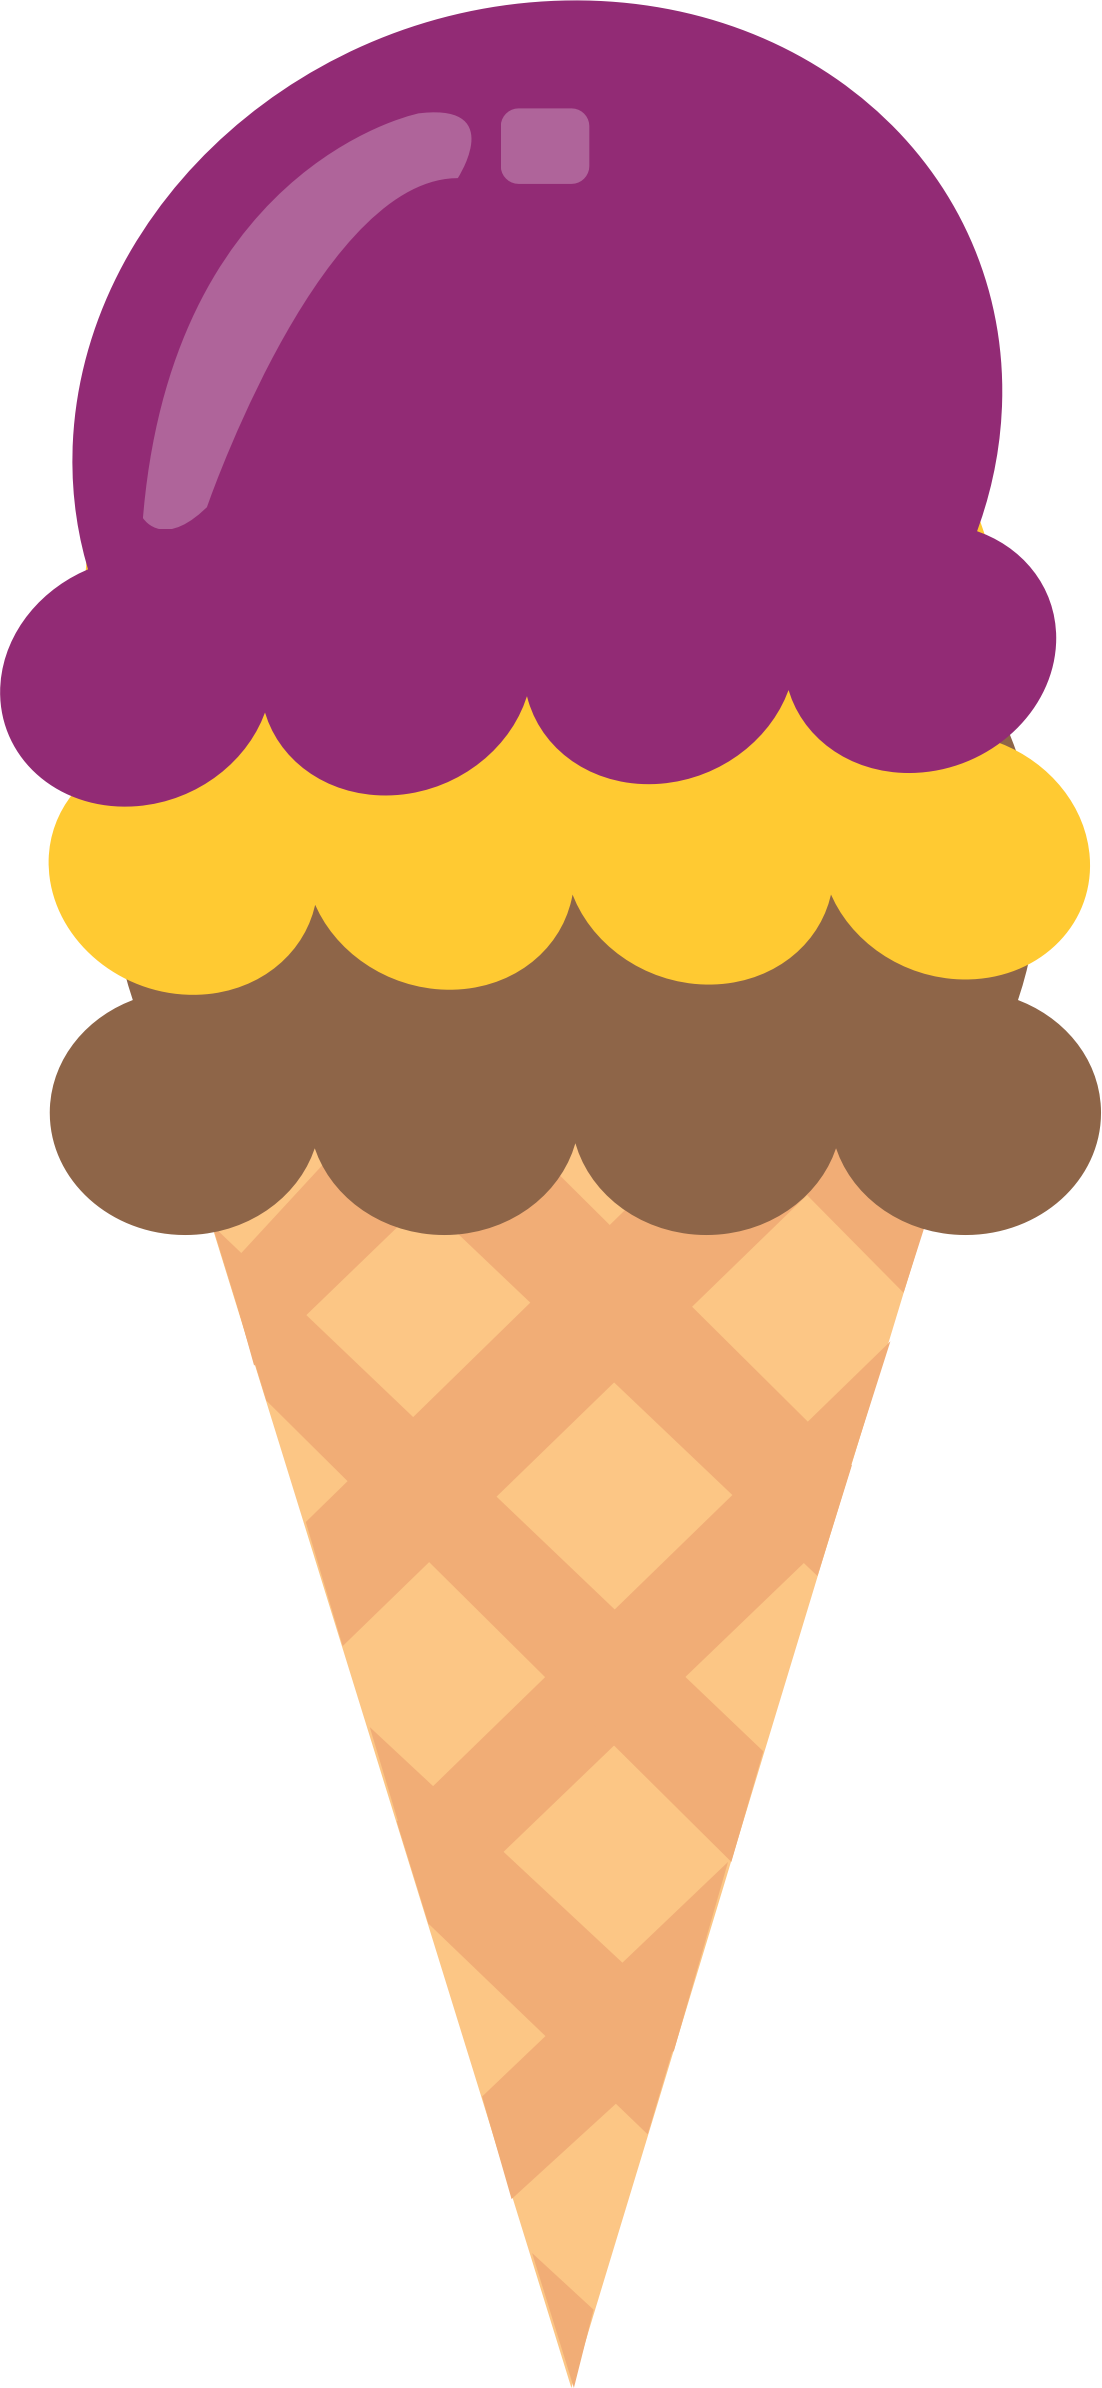 Big Image - Ice Cream Cone Clip Art Large (1102x2388)